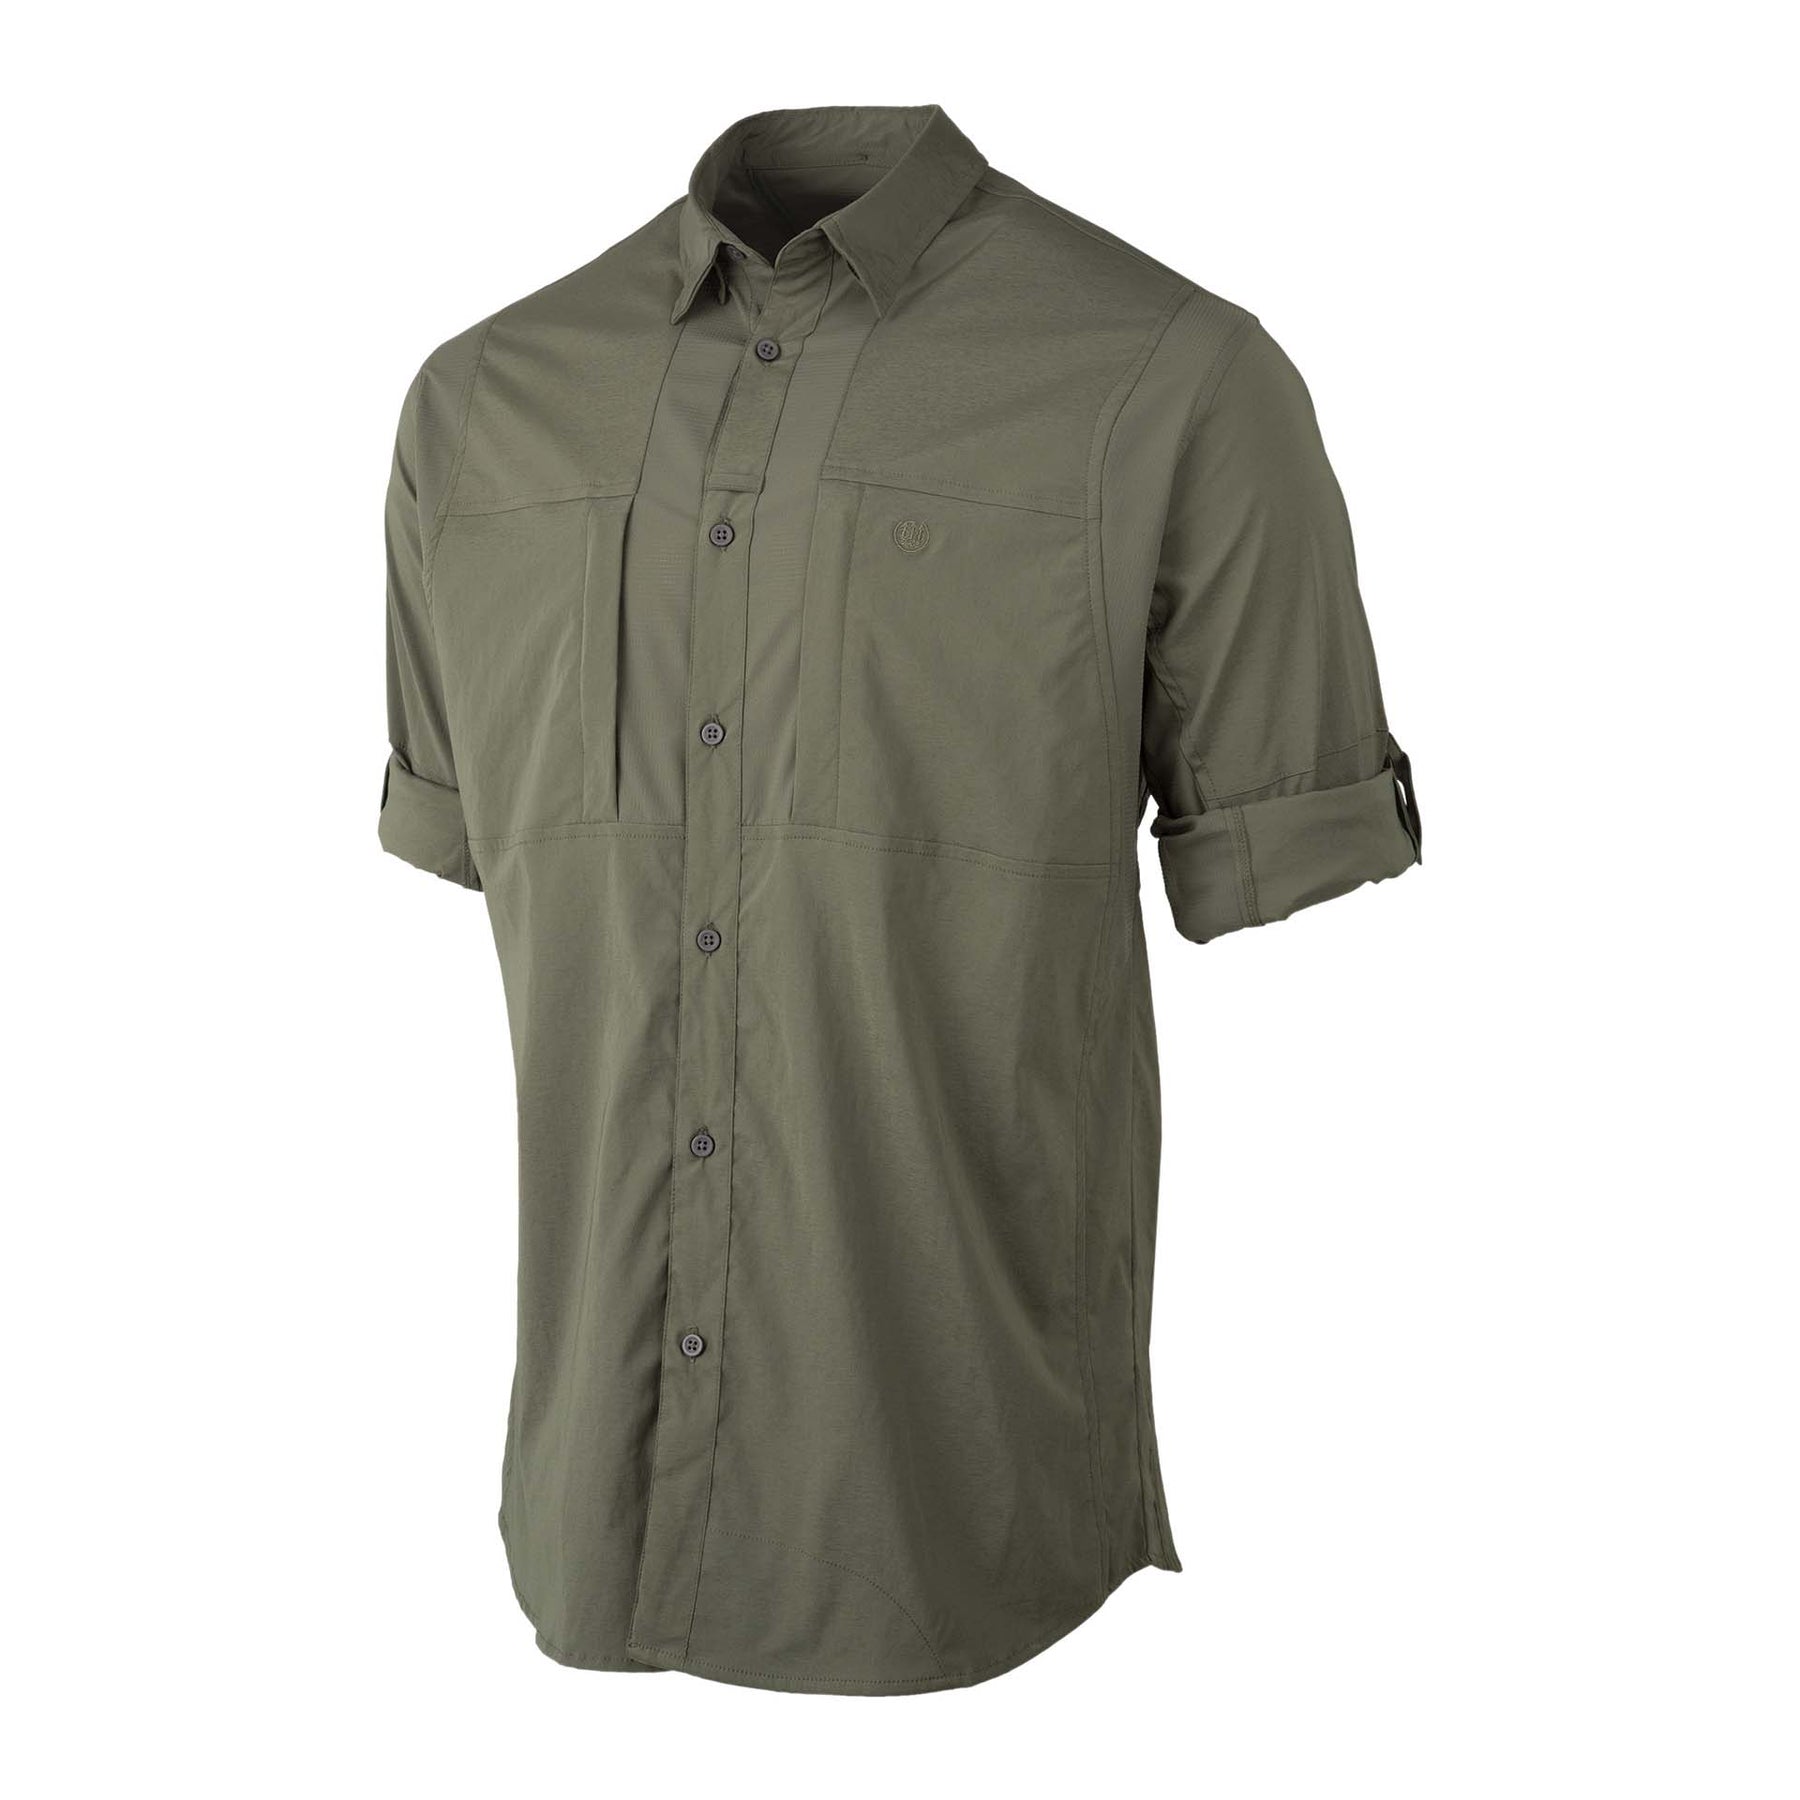 TKAD Flex Shirt - Green Stone – Beretta Gallery USA